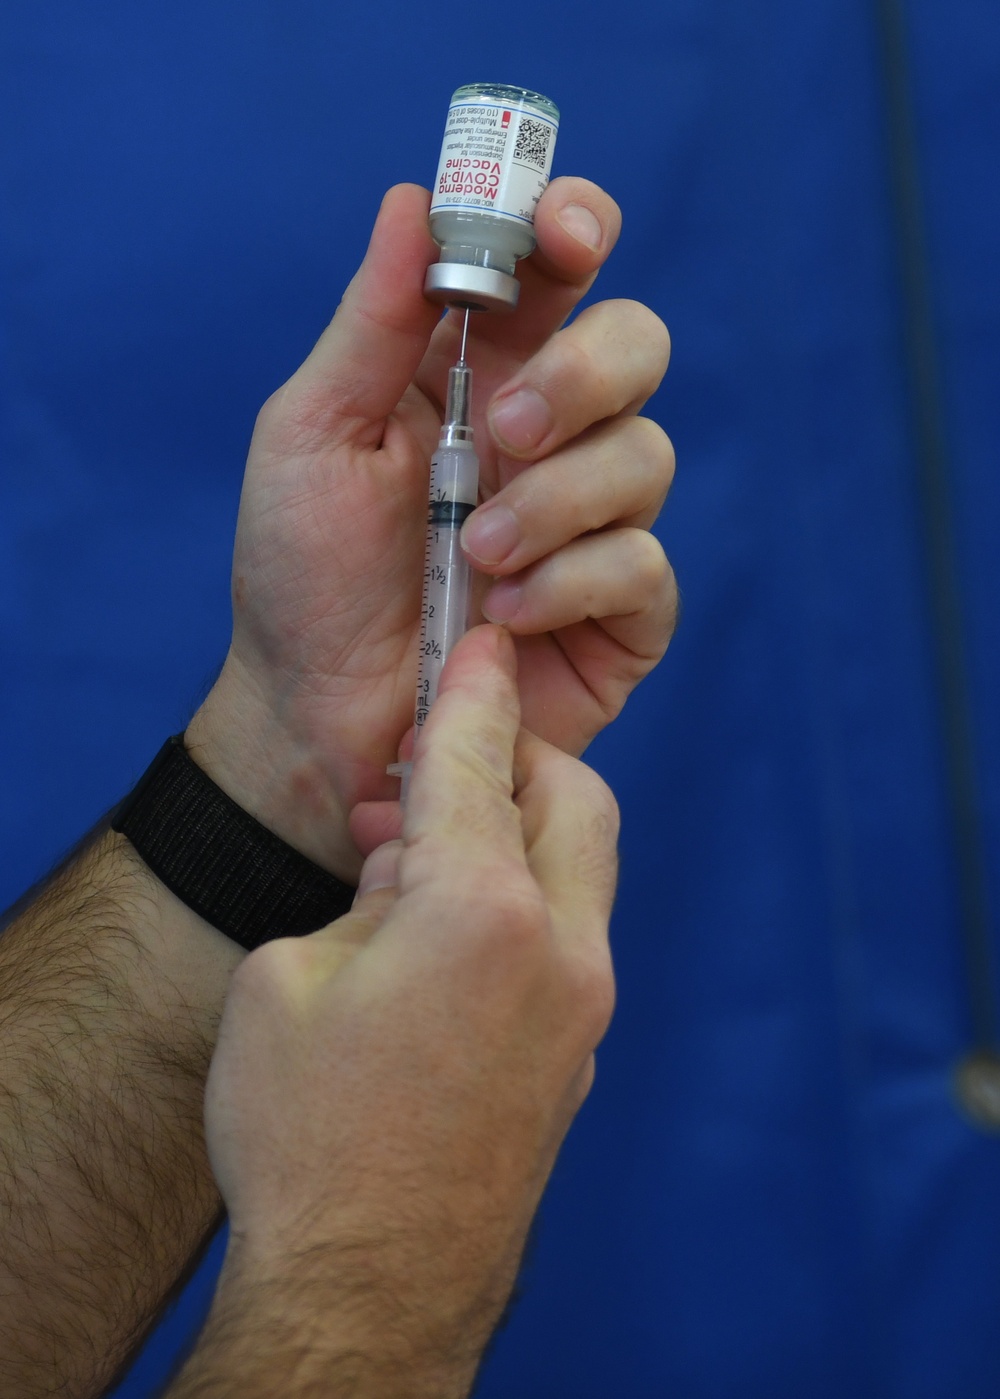 Kadena AB continues to administer the Moderna vaccine